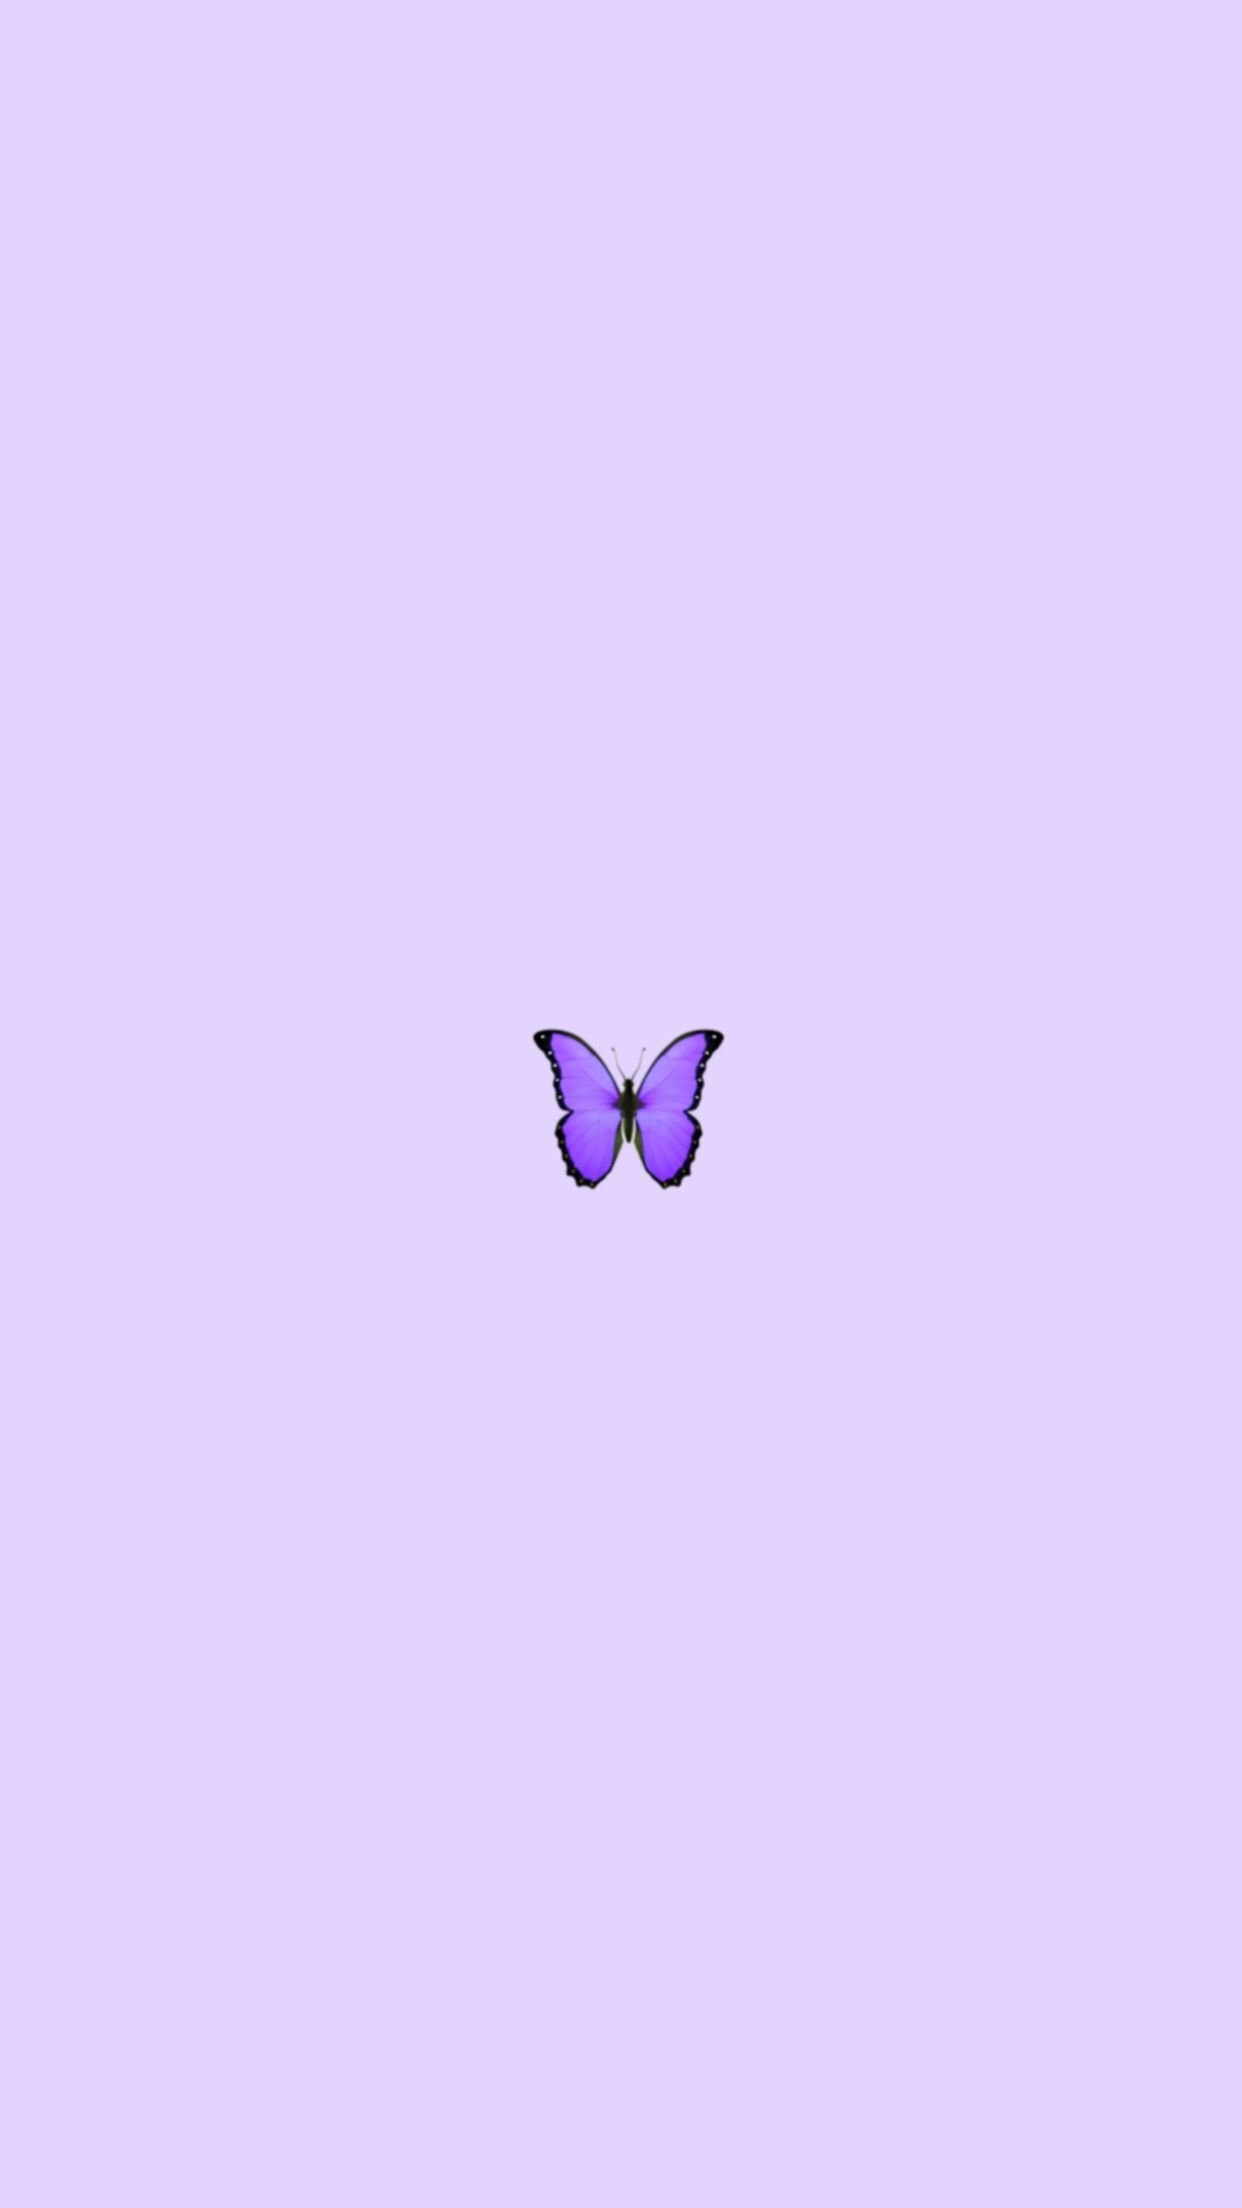 HD wallpaper purple butterflies wallpaper butterfly abstract glow neon   Wallpaper Flare